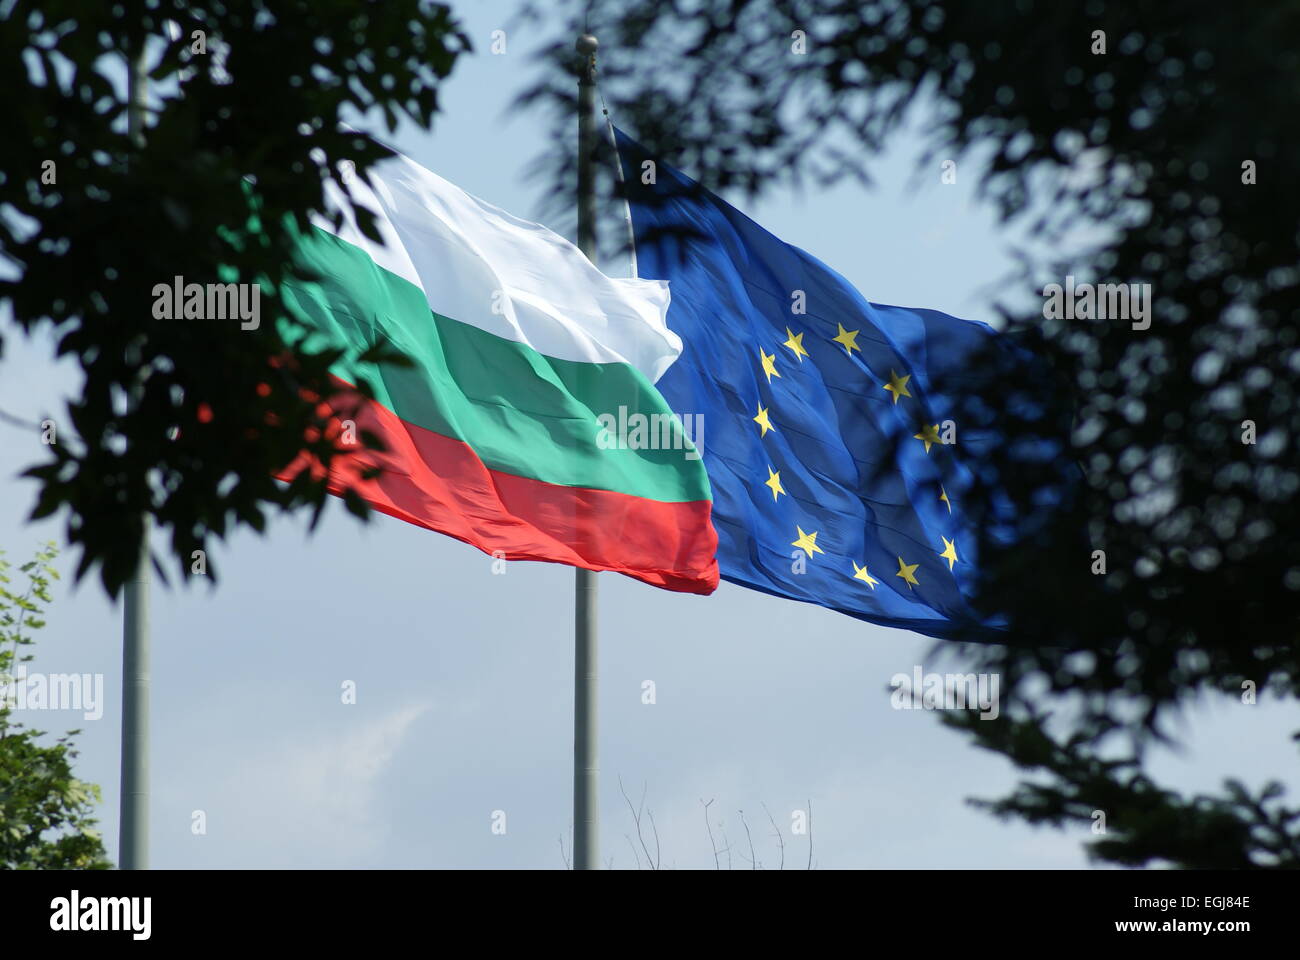 Un drapeau bulgare et un drapeau de l'Union européenne volant ensemble sur les mâts de drapeaux parmi les arbres. Banque D'Images